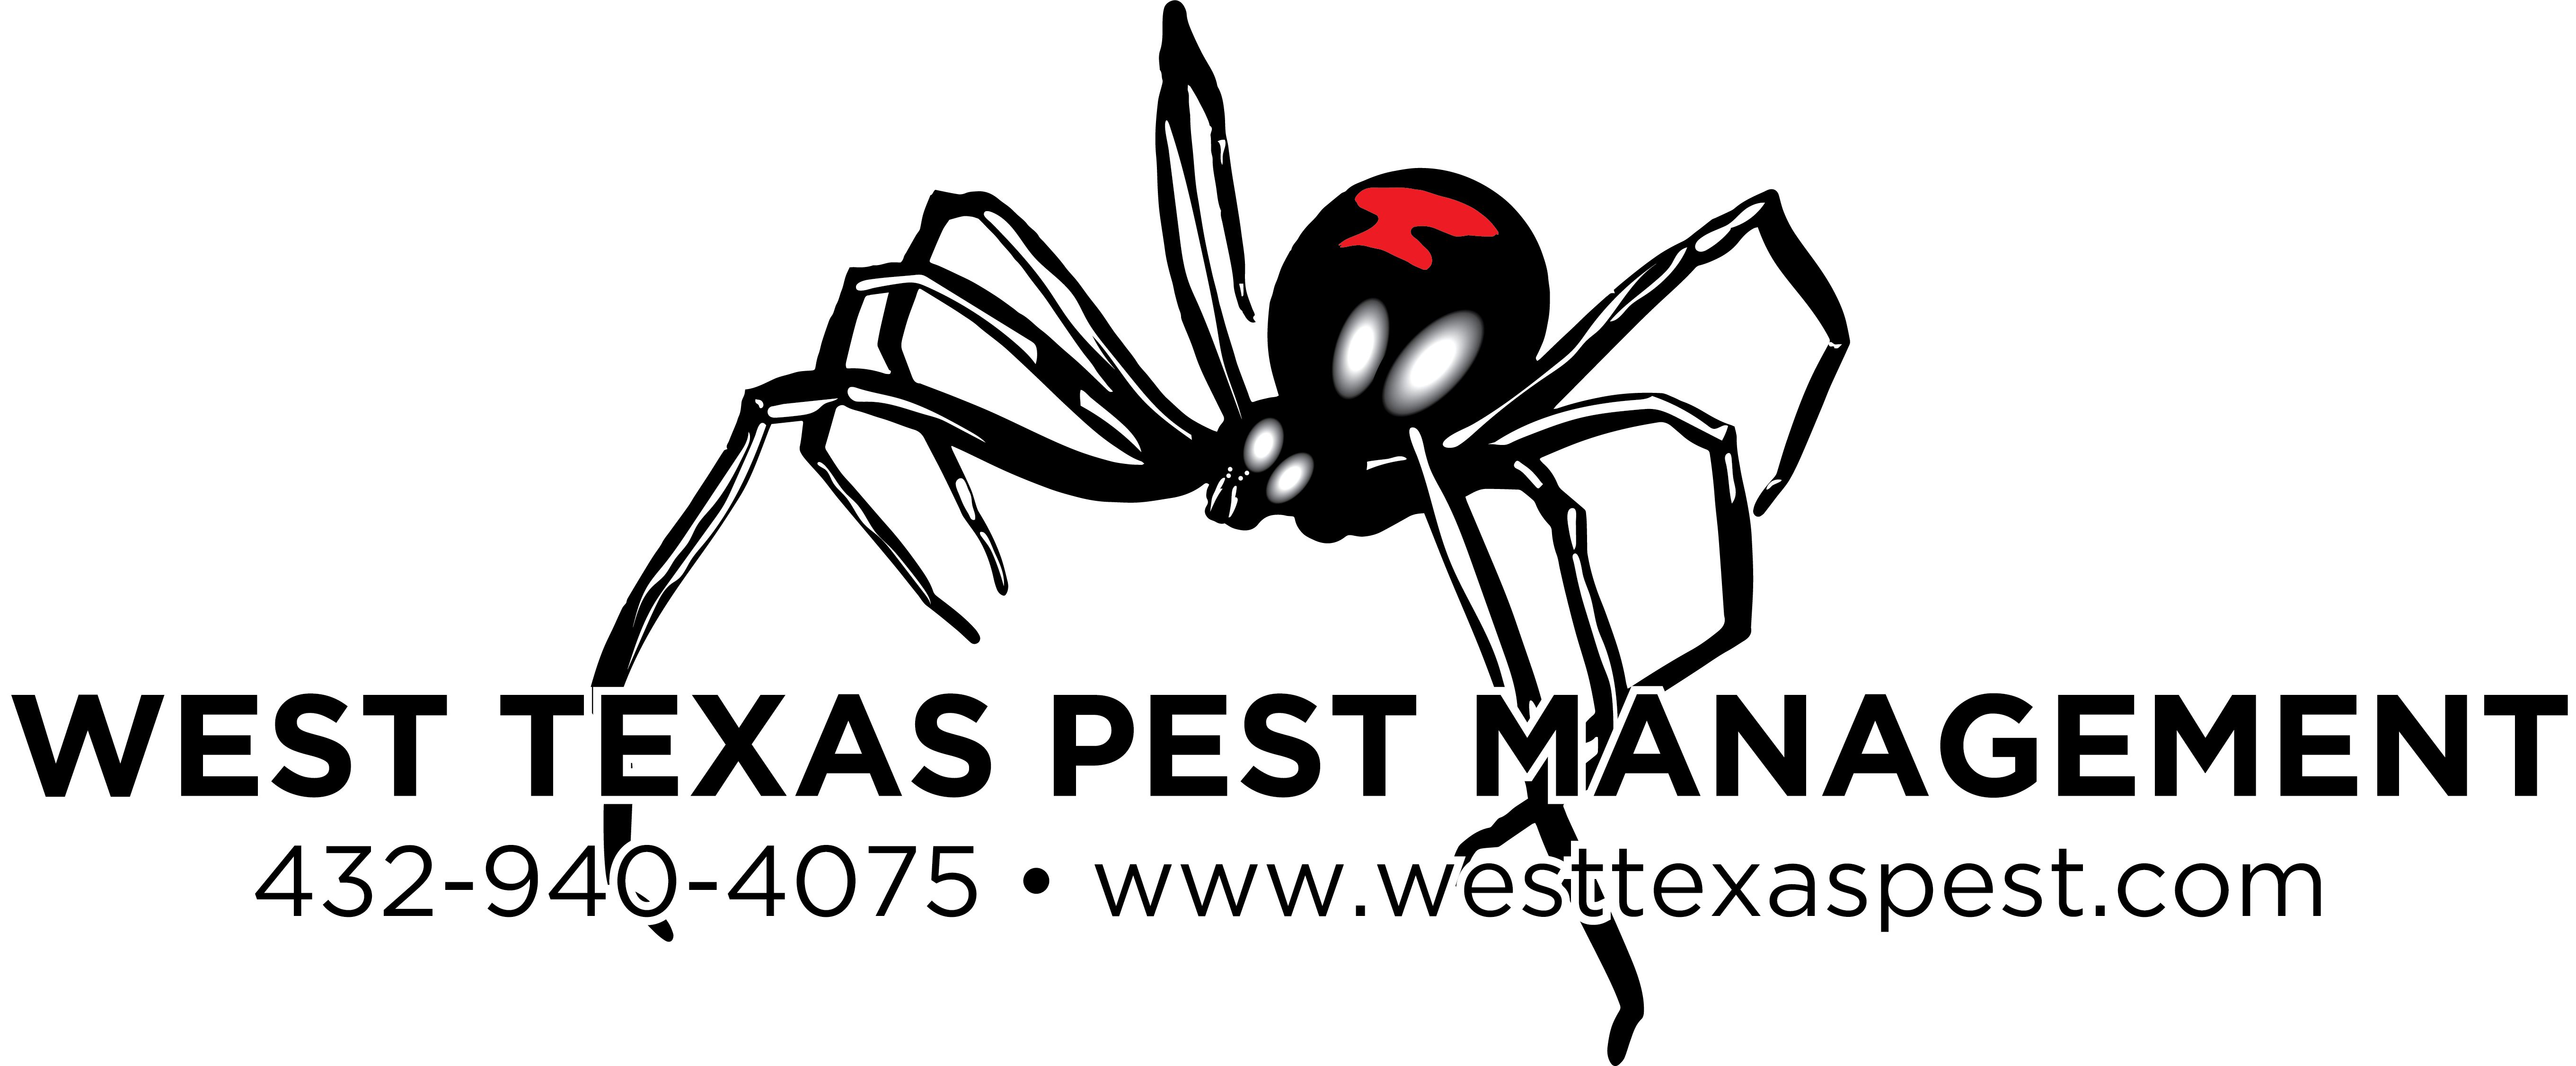 West Texas Pest Management